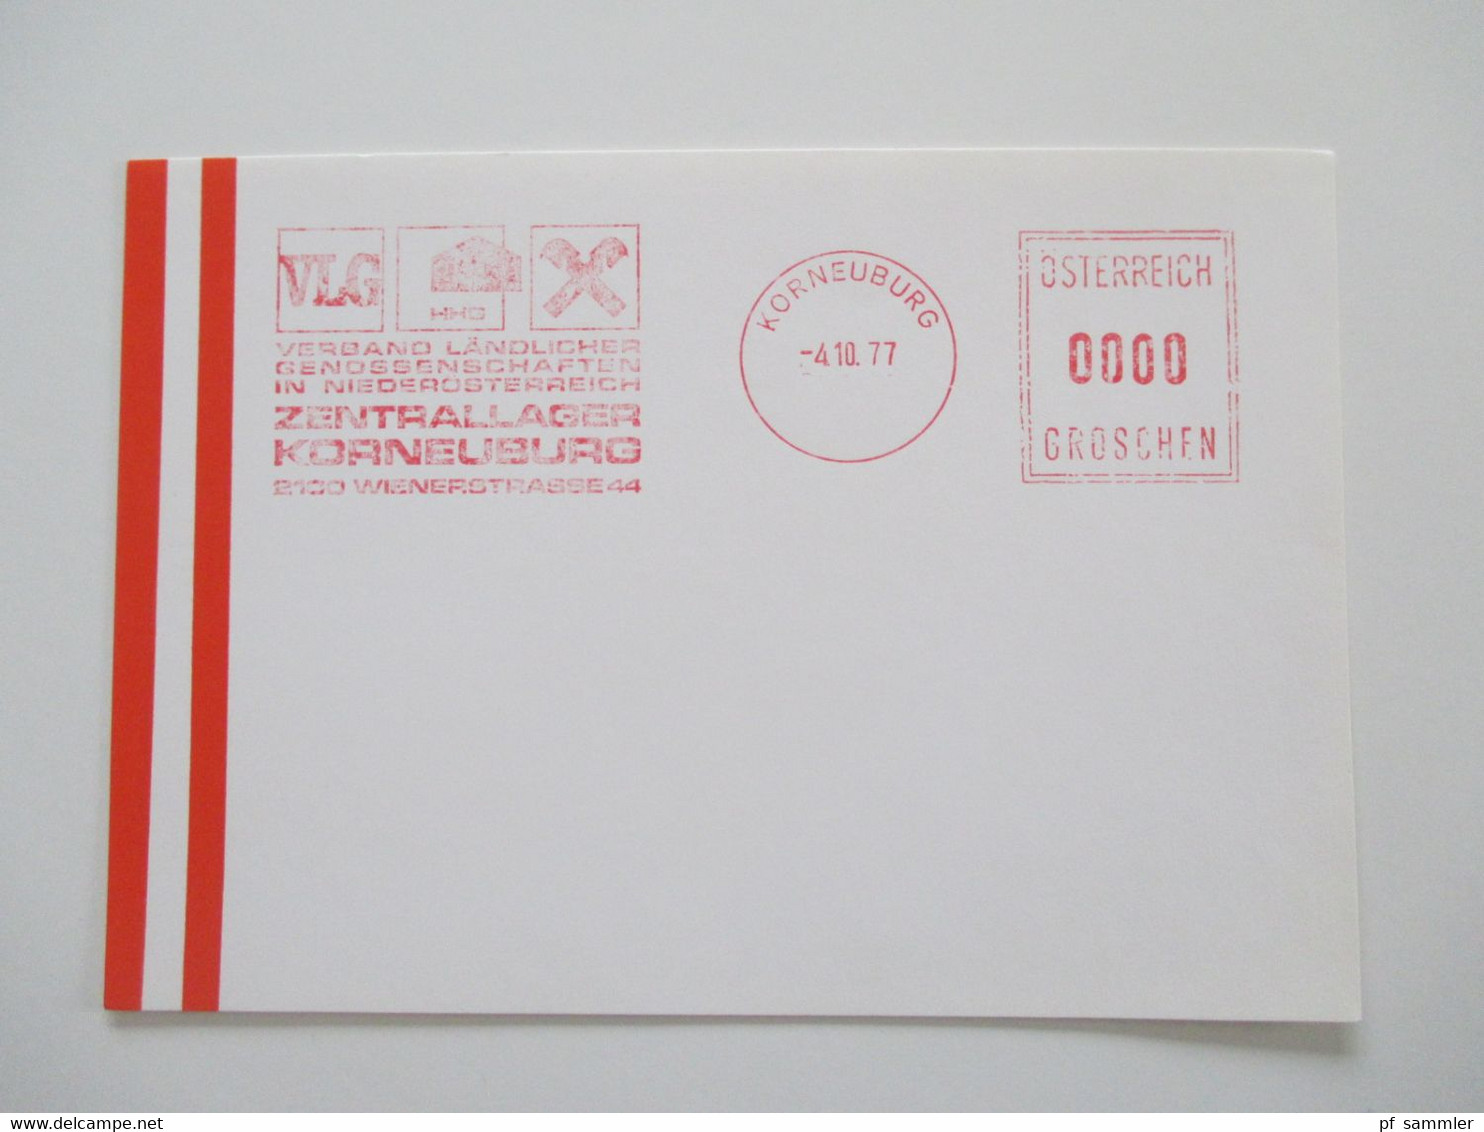 Österreich 1976 - 78 Freistempel Mit Wert 0000 Groschen Insgesamt 29 Stempelbelege / Blanko Karten Alles Verschiedene St - Cartas & Documentos